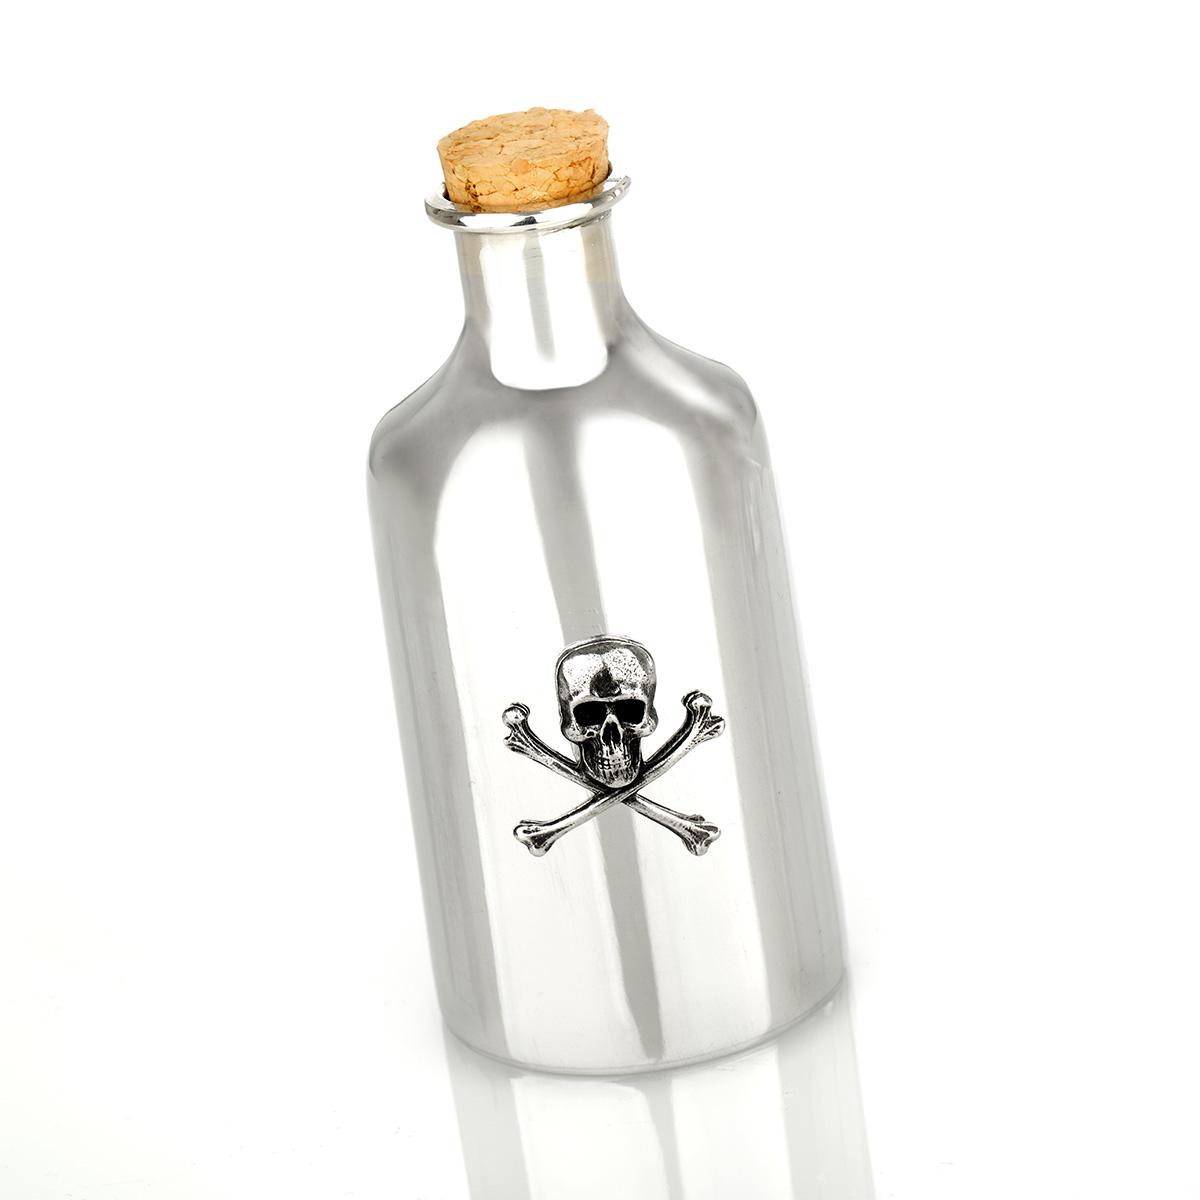 Skull Flask - massives Fläschchen aus Zinn mit einem Totenkopf Badge